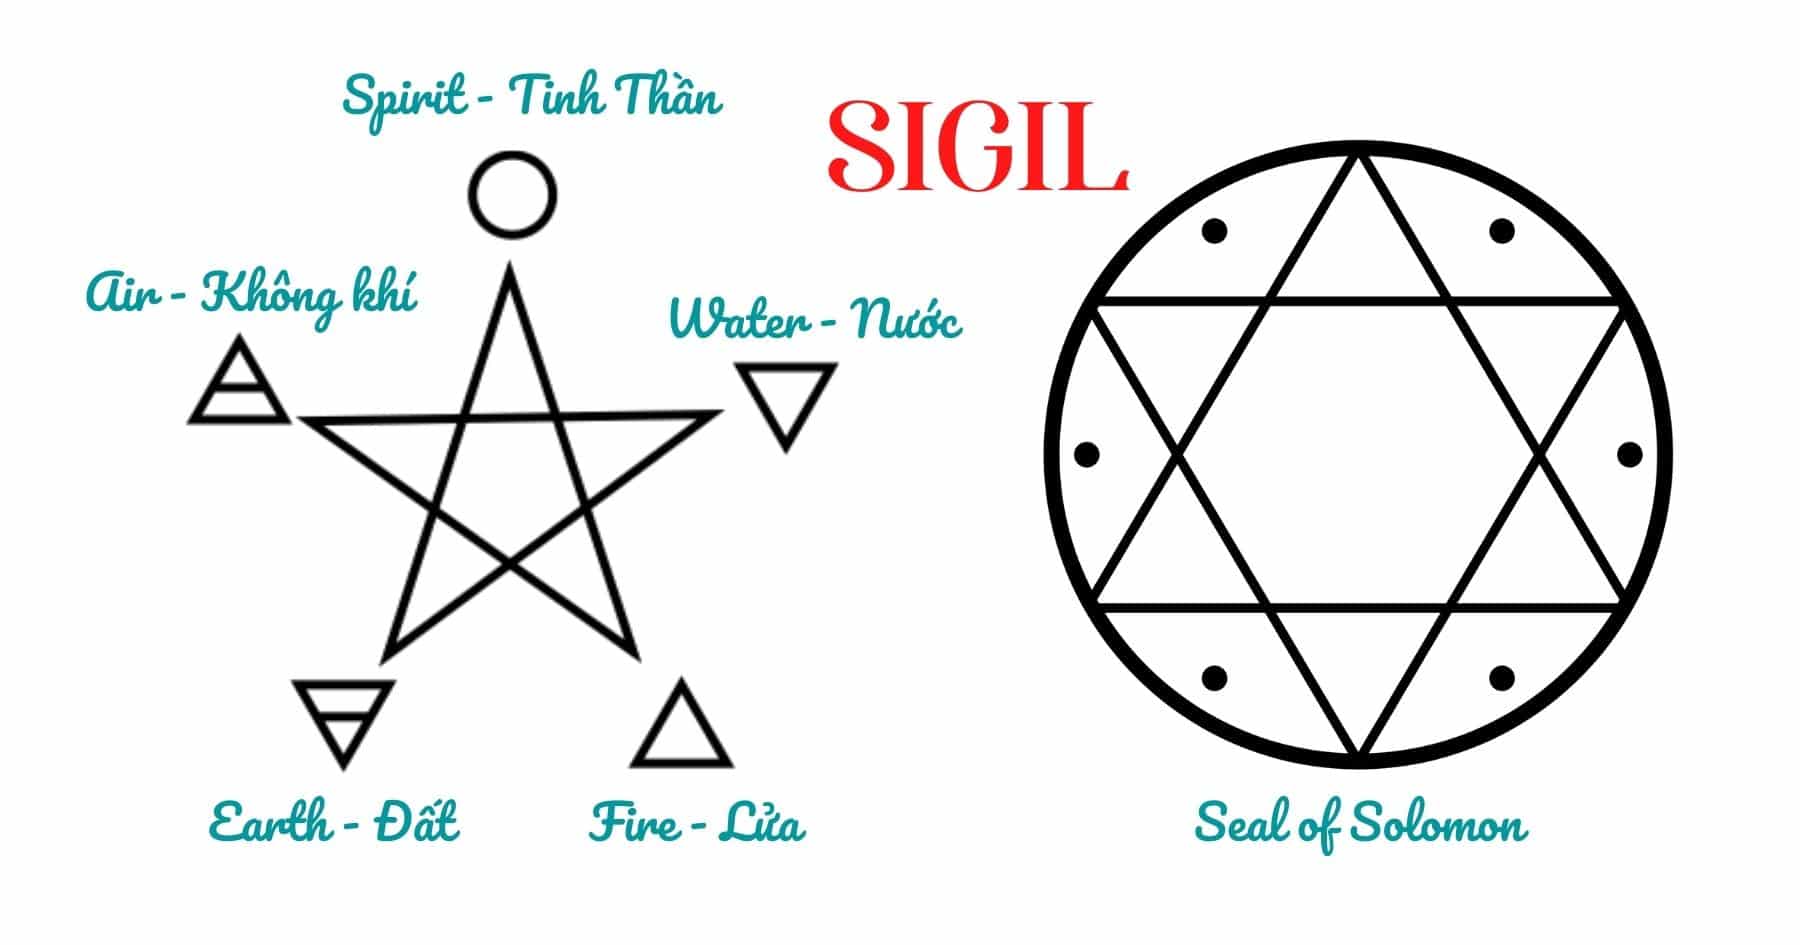 Ý nghĩa của dấu Sigil trong pháp thuật Witch - 2023